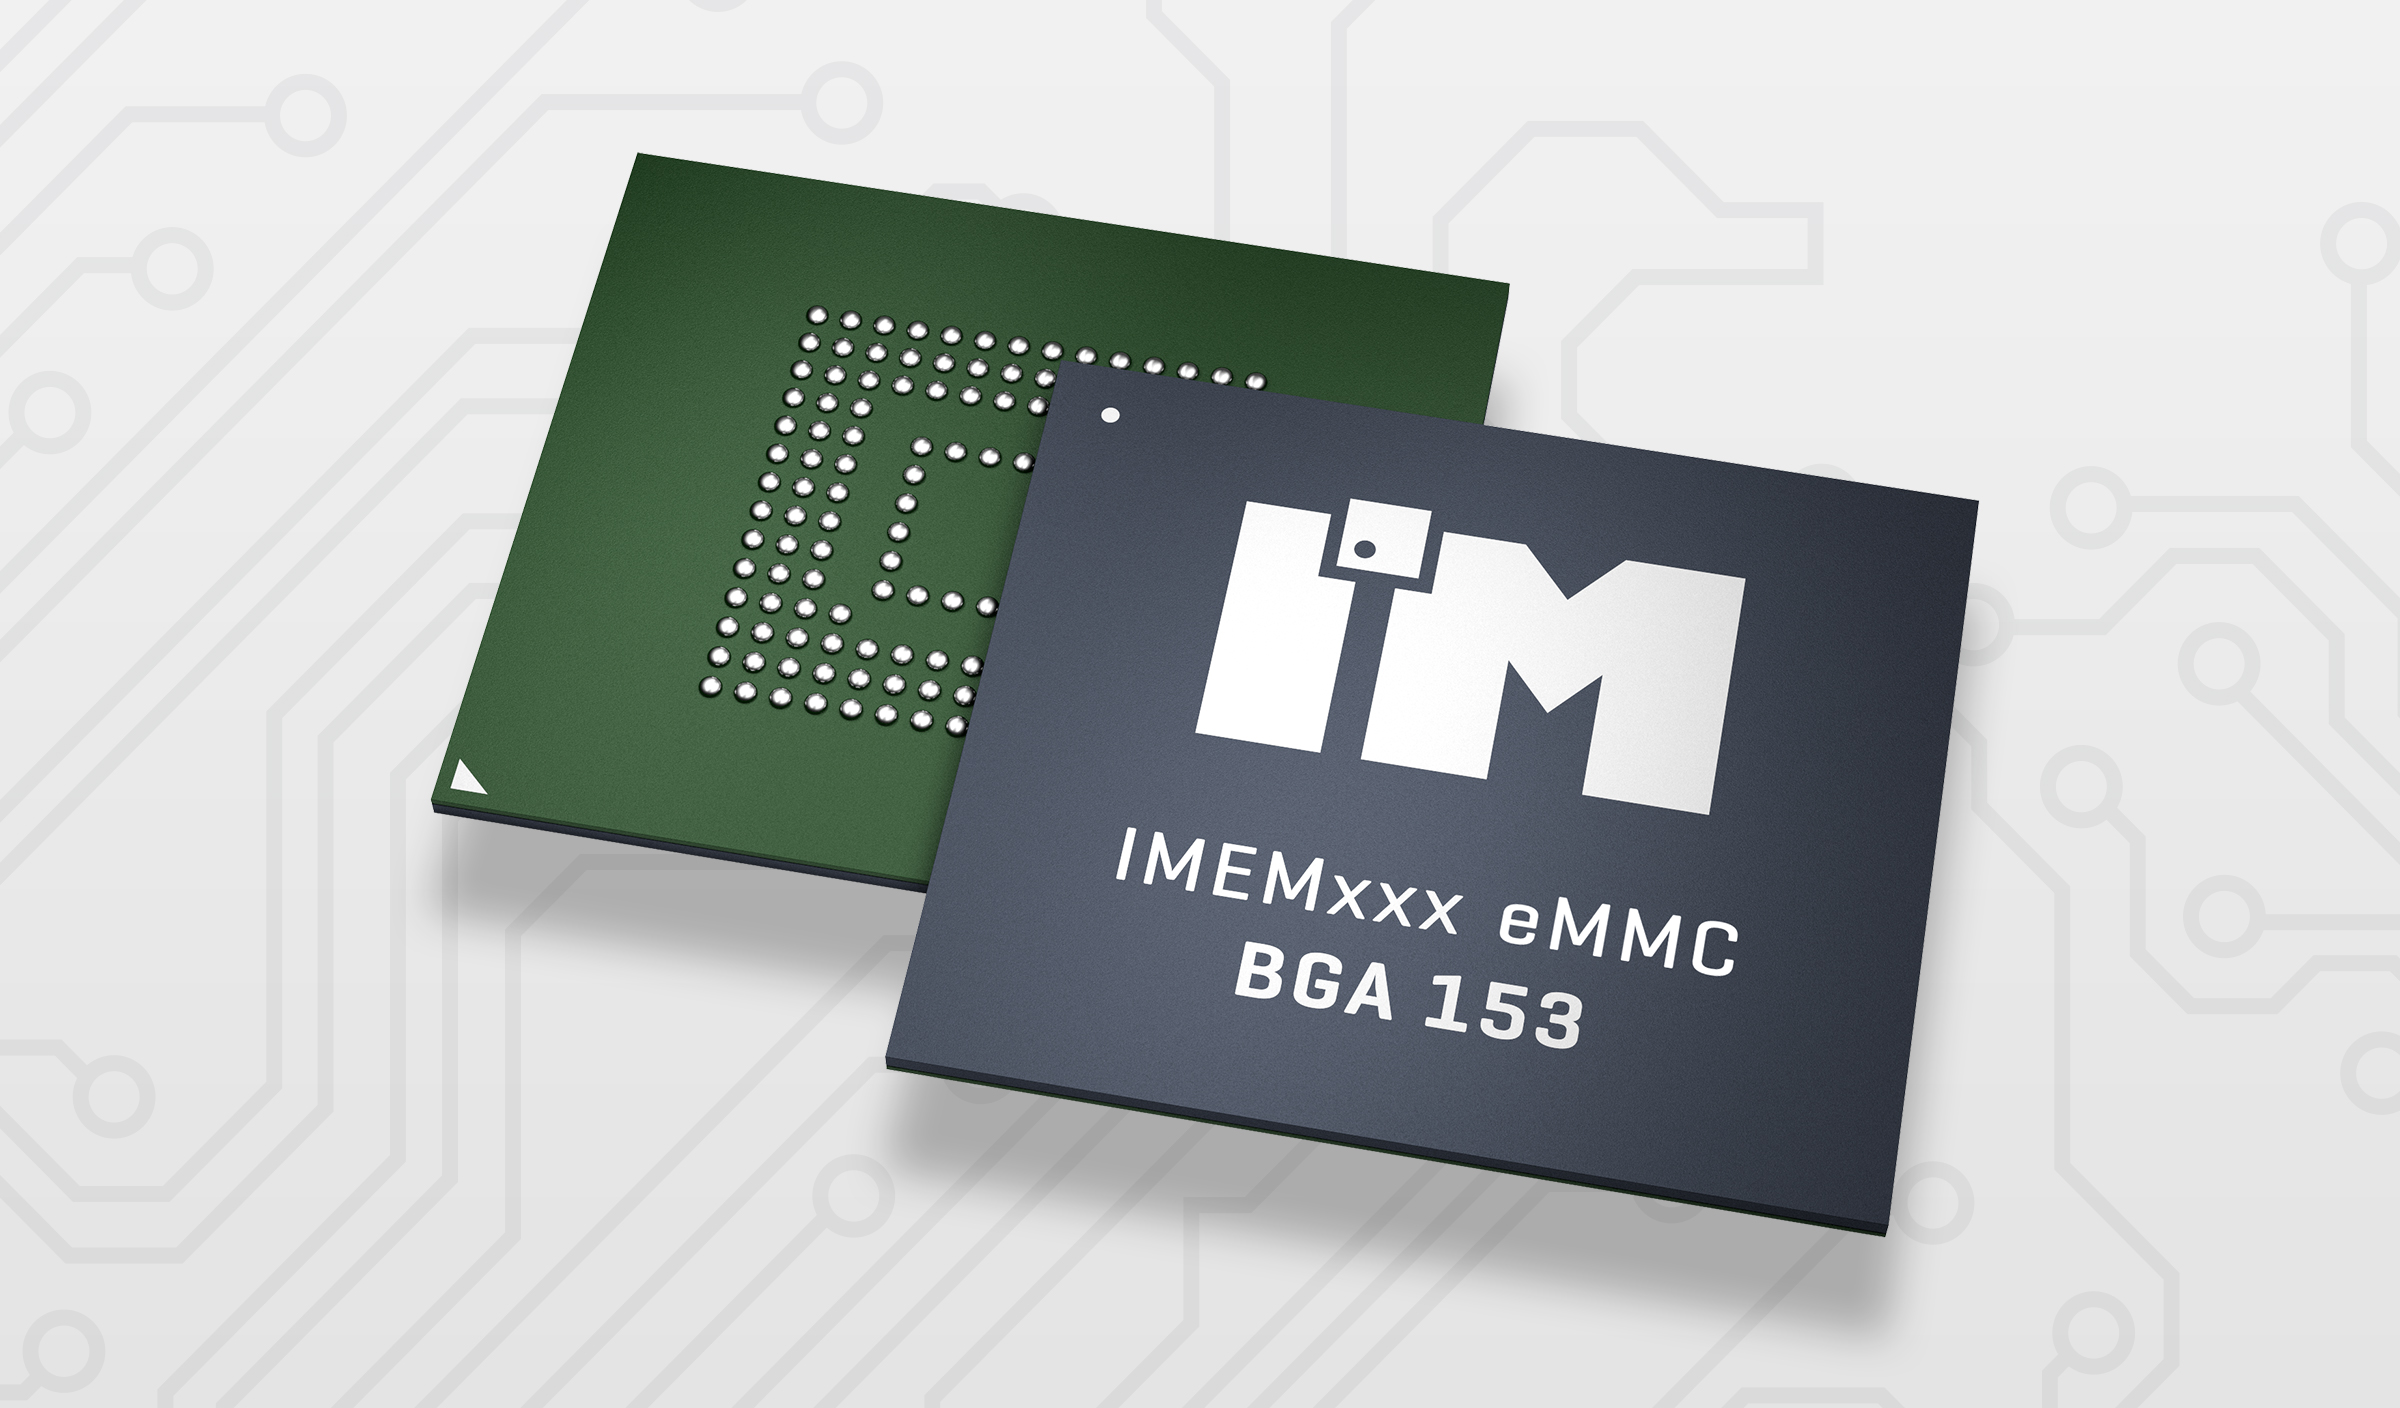 Pamięć eMMC 5.1, 16GB, IMC1B1B1C2A2A1E1A5A0000